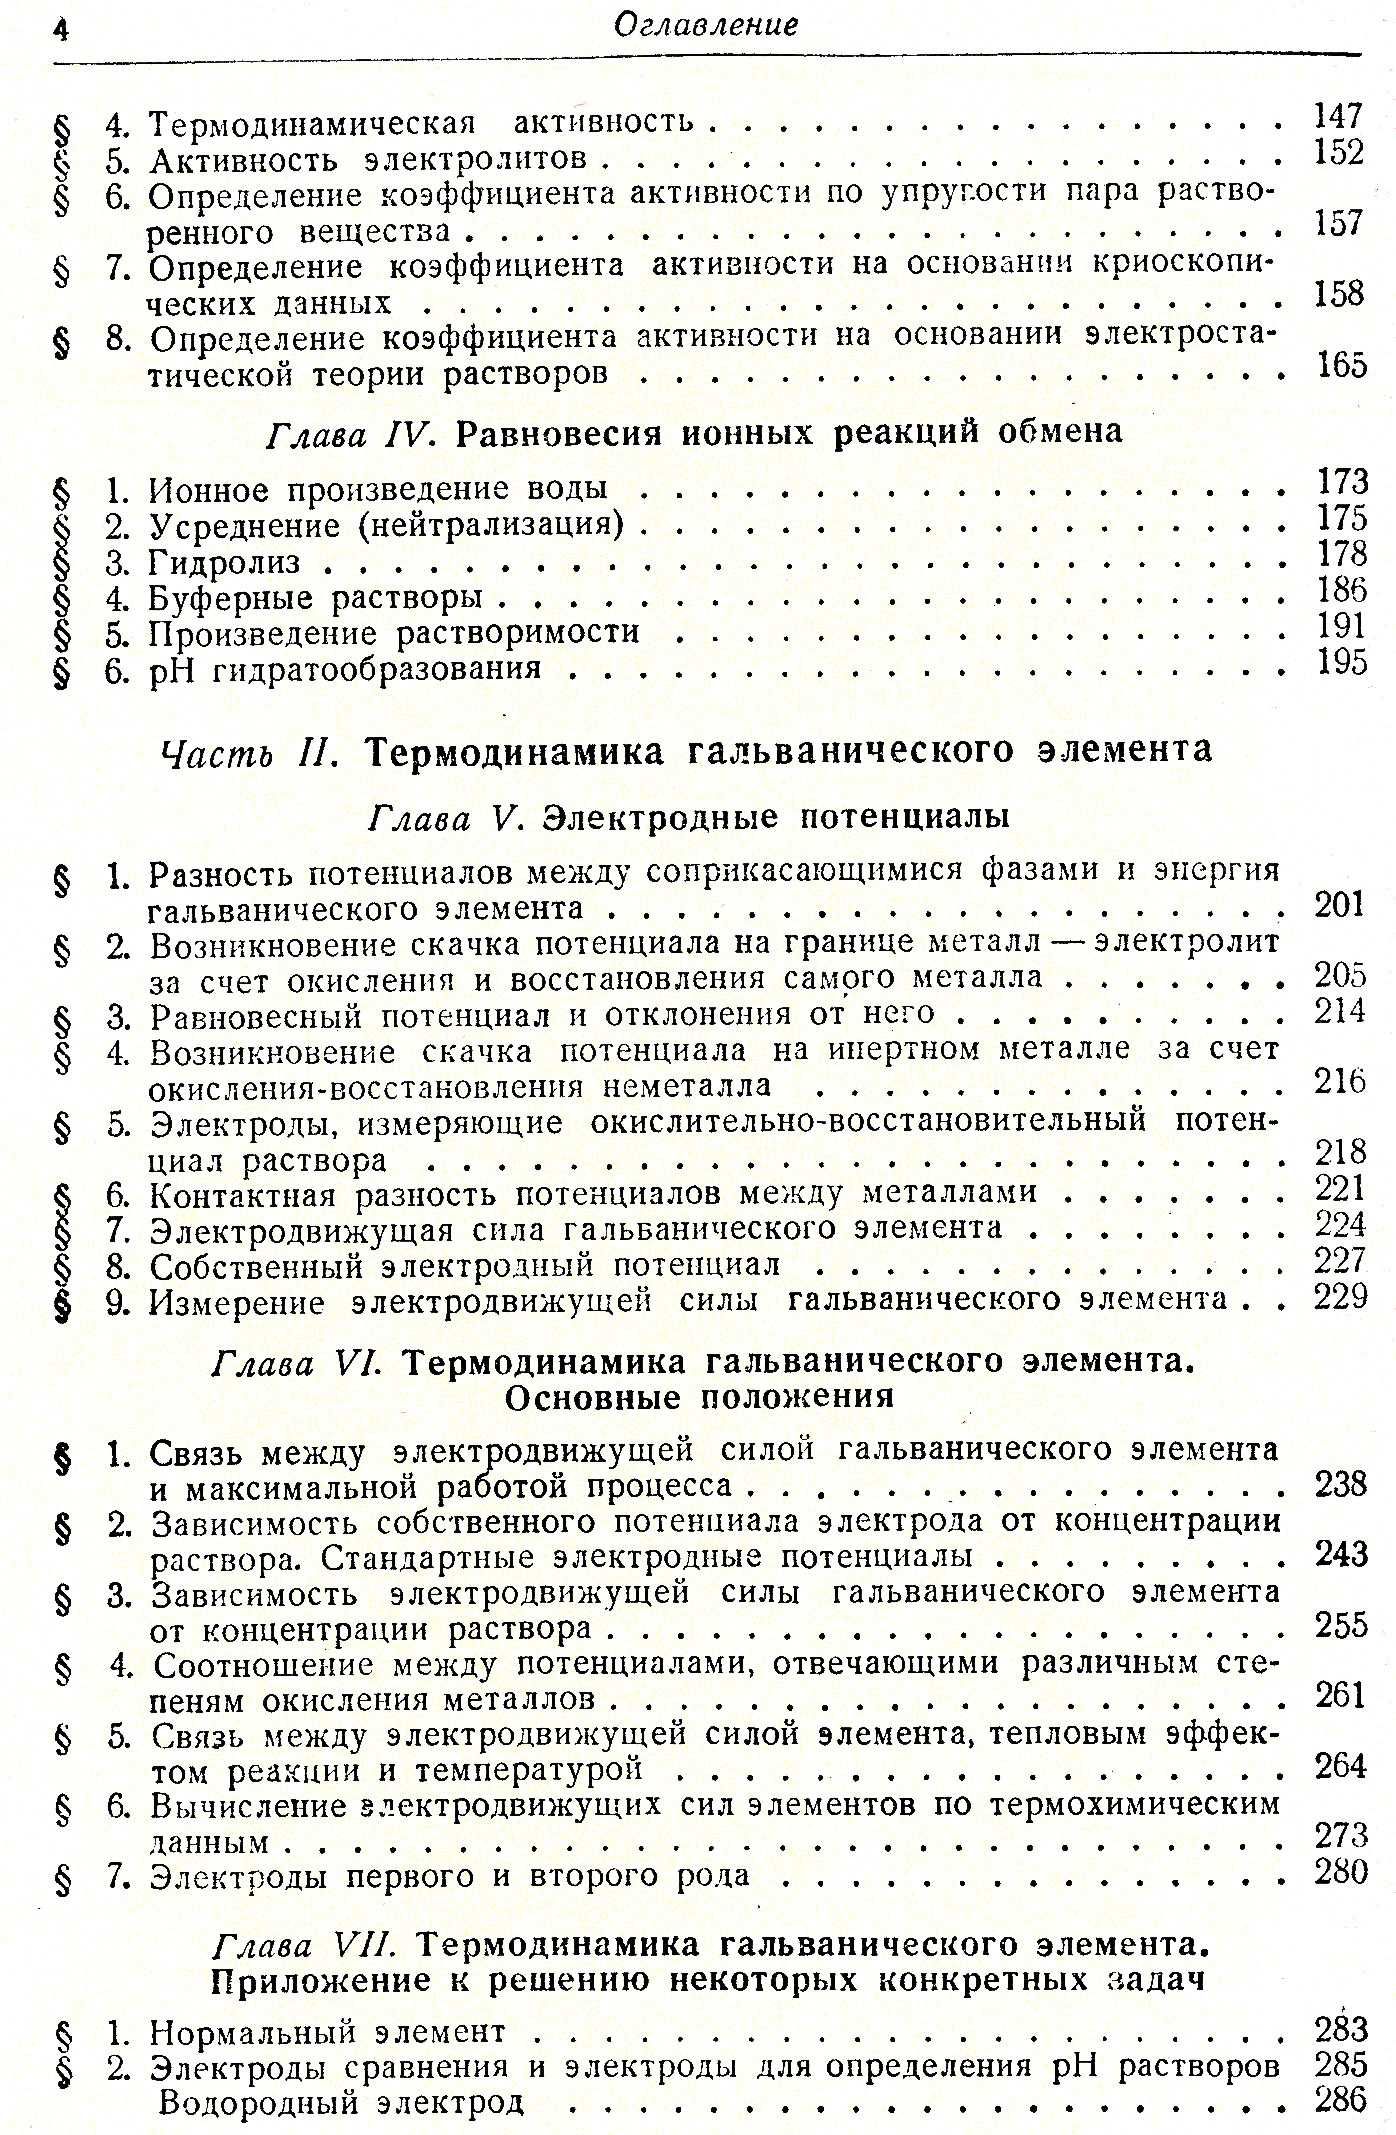 Теоретическая электрохимия, В.В.Скорчелетти, 1963